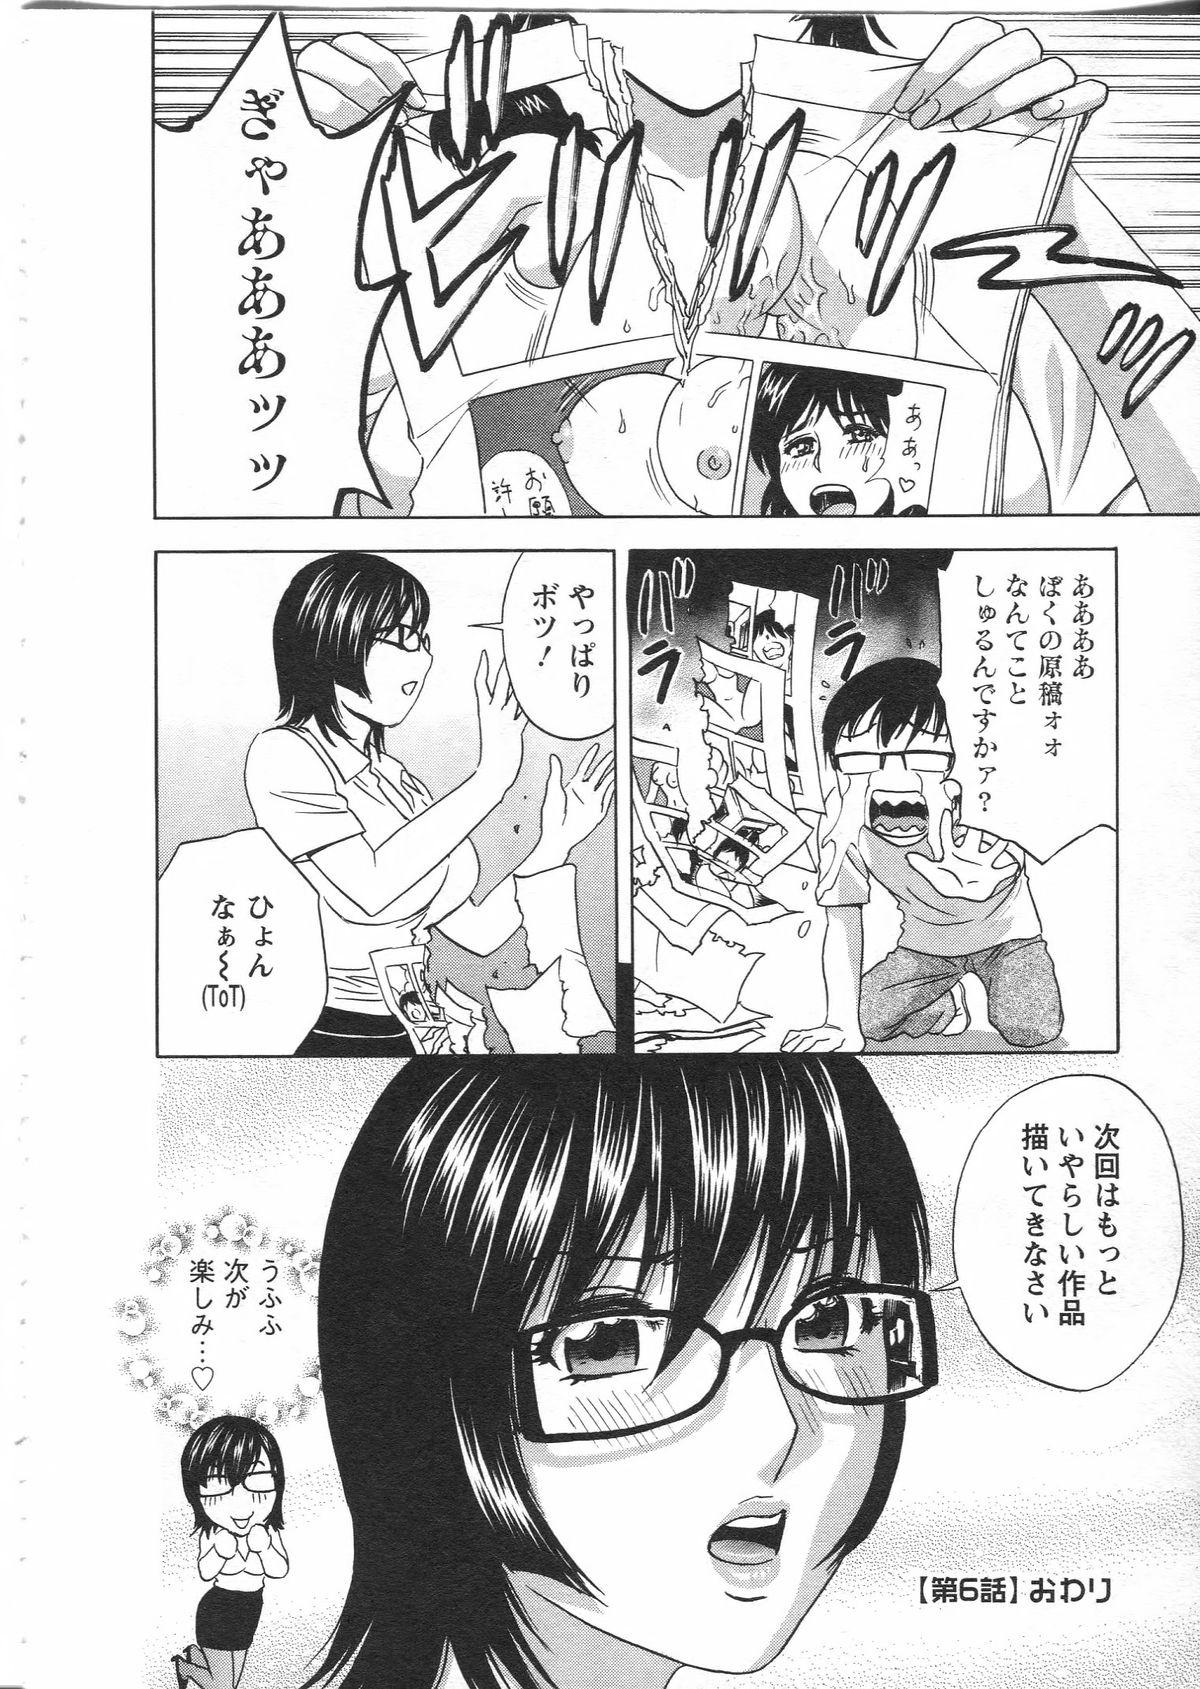 Manga no youna Hitozuma to no Hibi - Days with Married Women such as Comics. 115